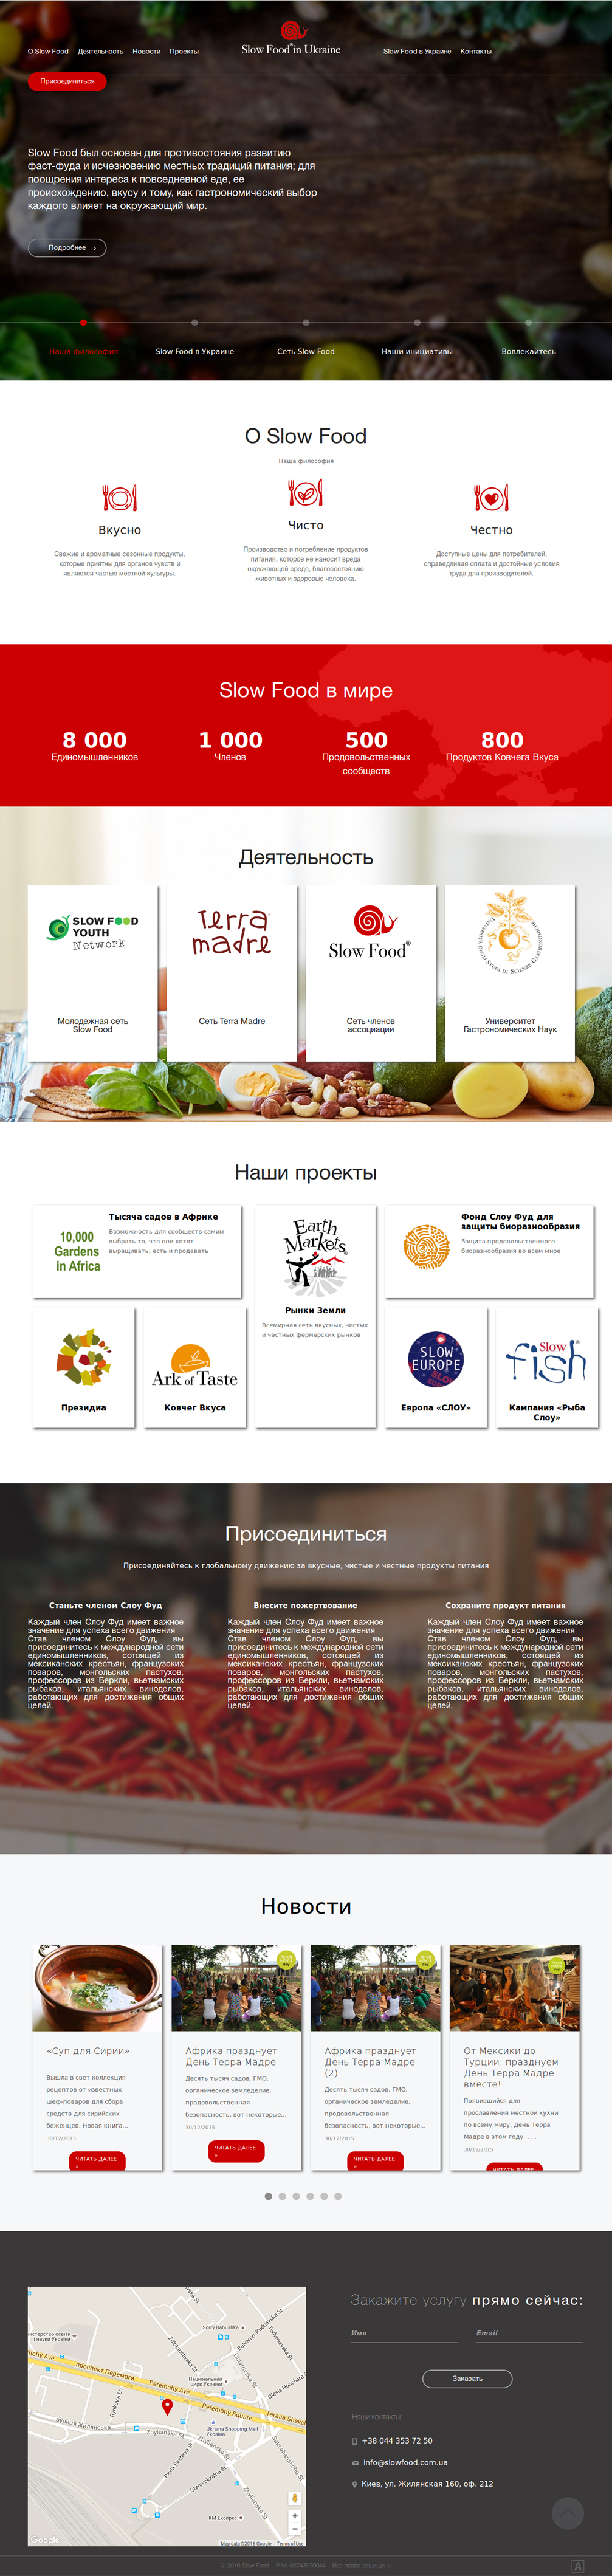 Slow Food in Ukraine